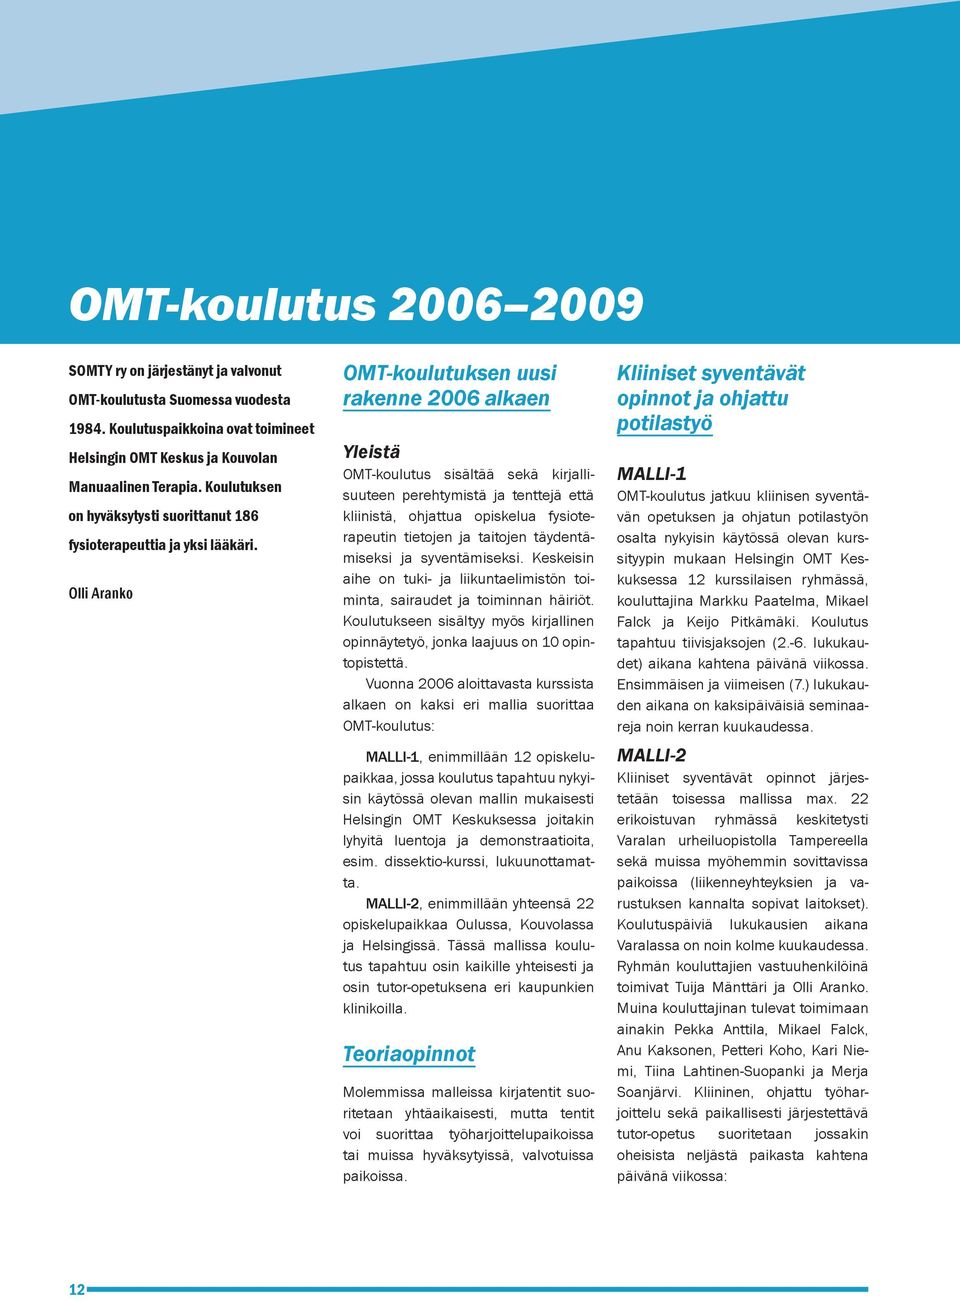 Olli Aranko OMT-koulutuksen uusi rakenne 2006 alkaen Yleistä OMT-koulutus sisältää sekä kirjallisuuteen perehtymistä ja tenttejä että kliinistä, ohjattua opiskelua fysioterapeutin tietojen ja